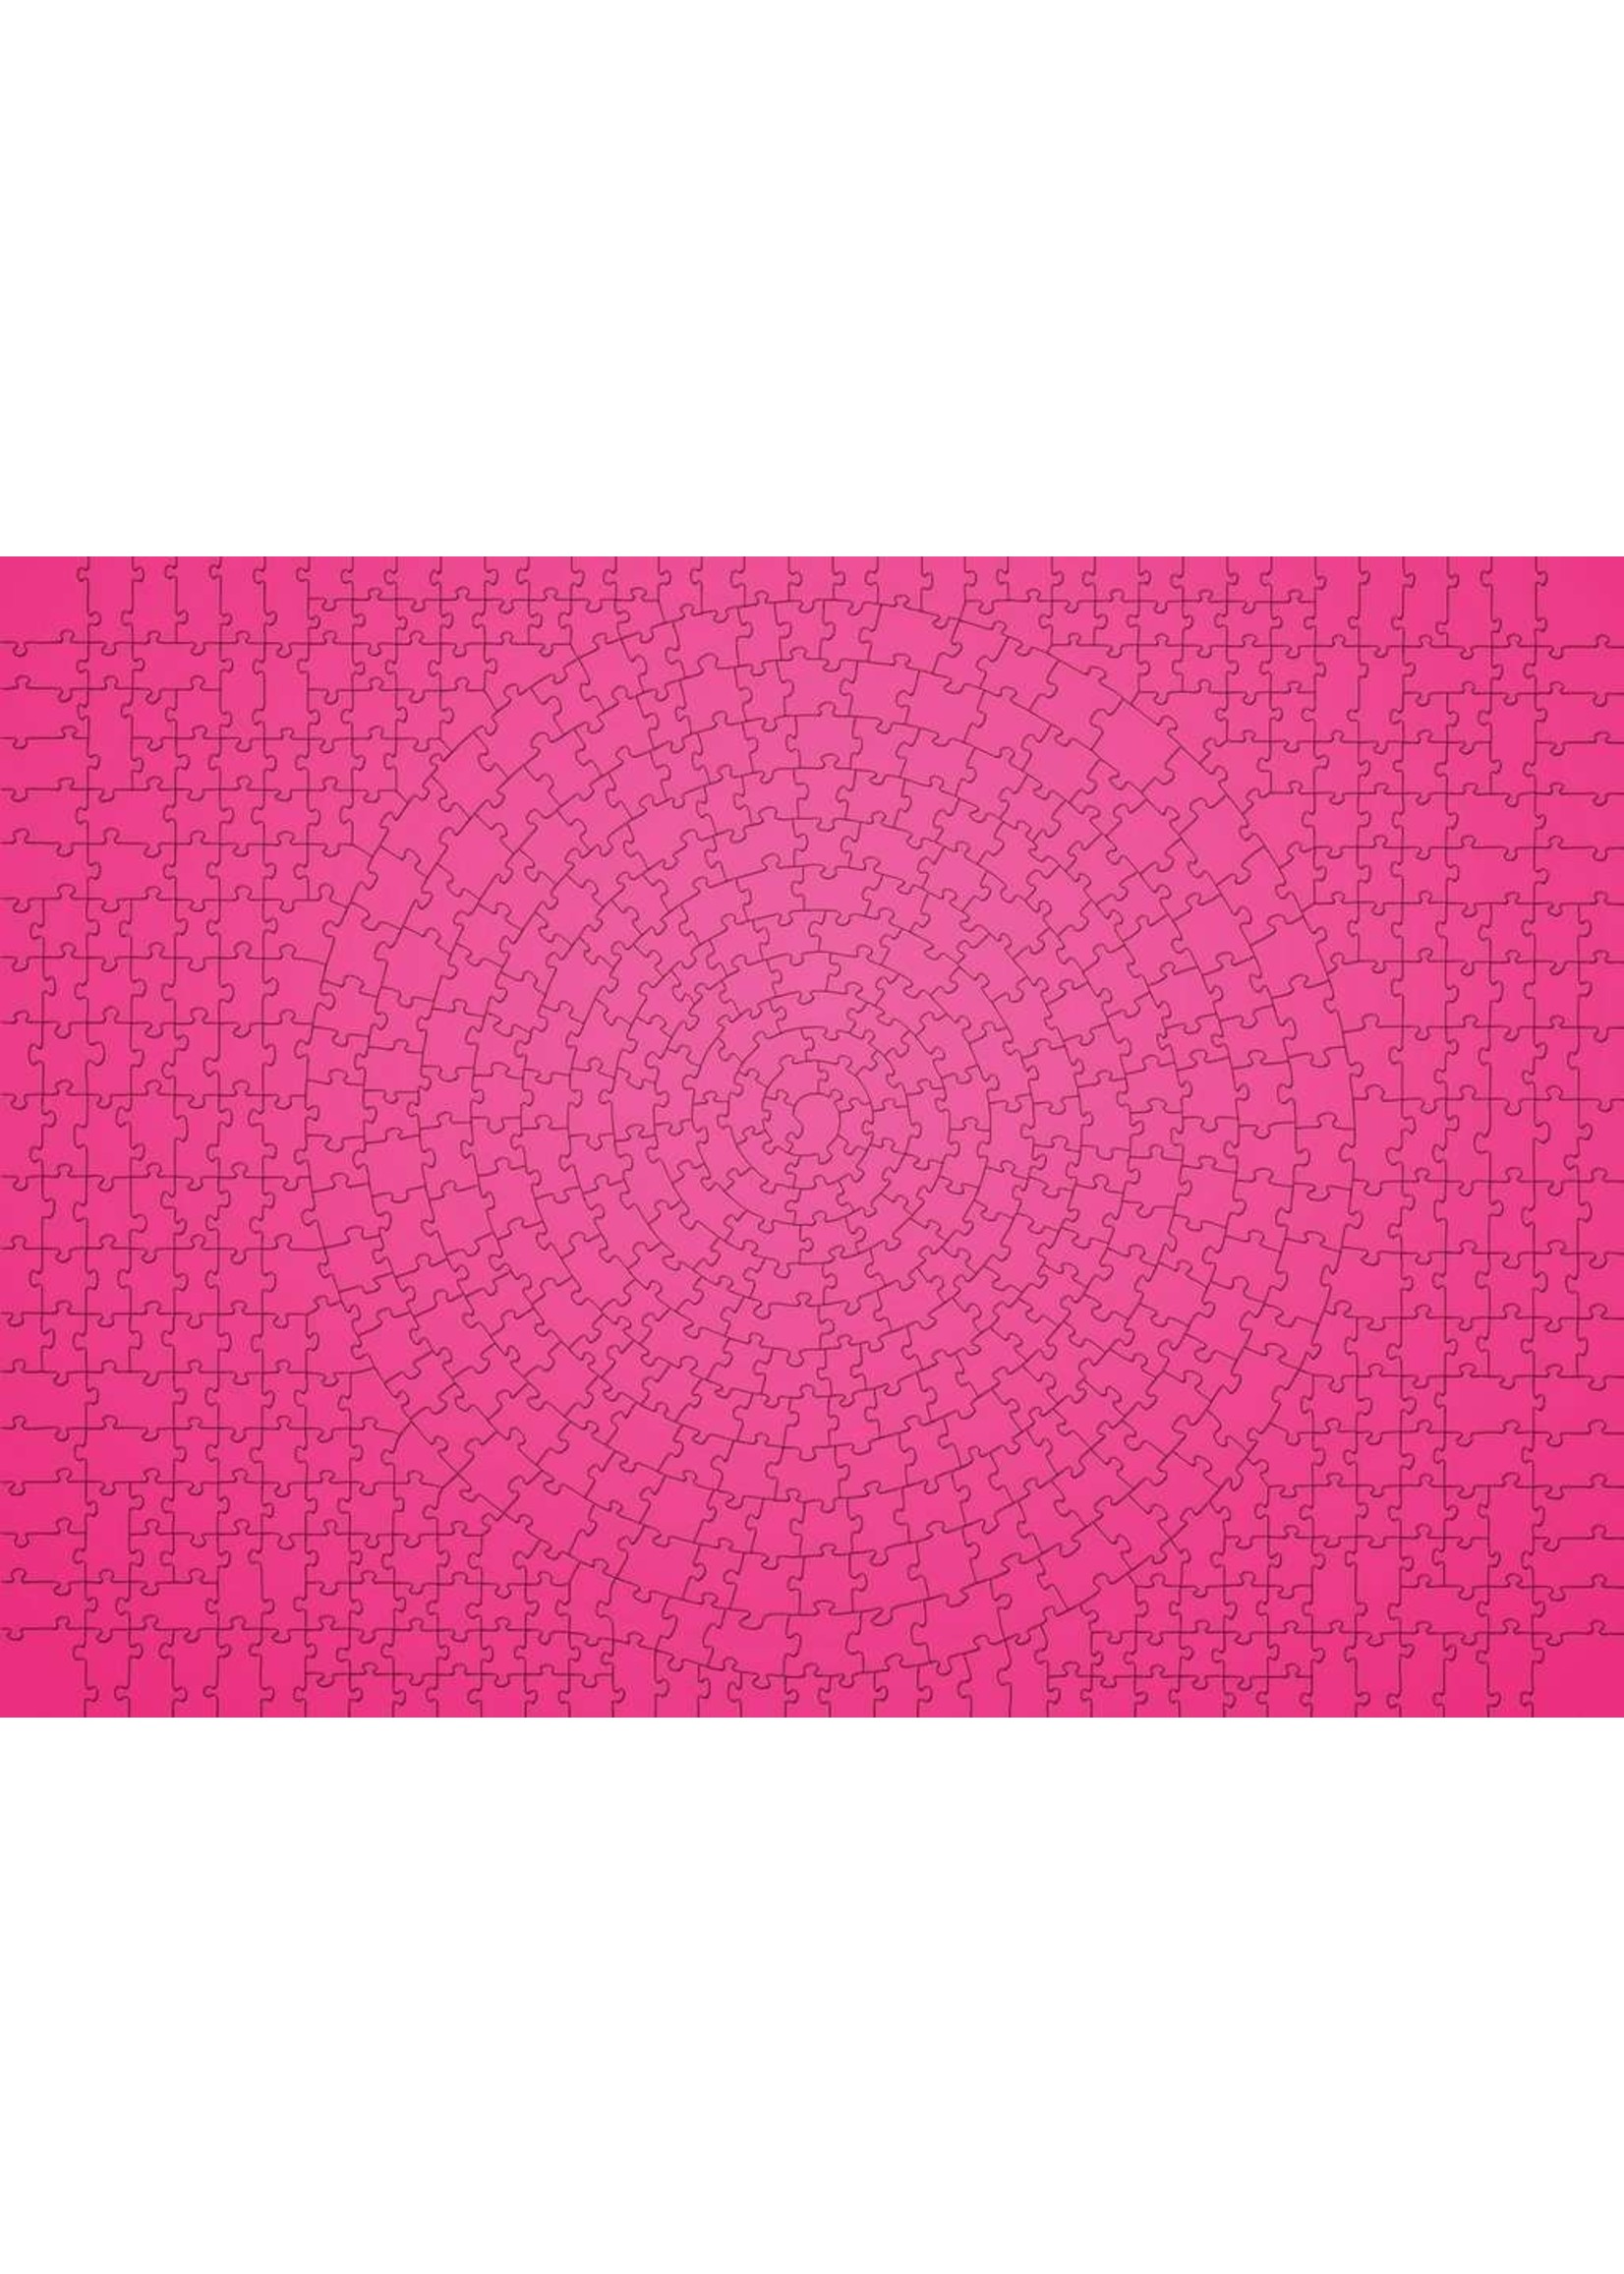 Ravensburger Krypt - Pink - 654 Piece Puzzle